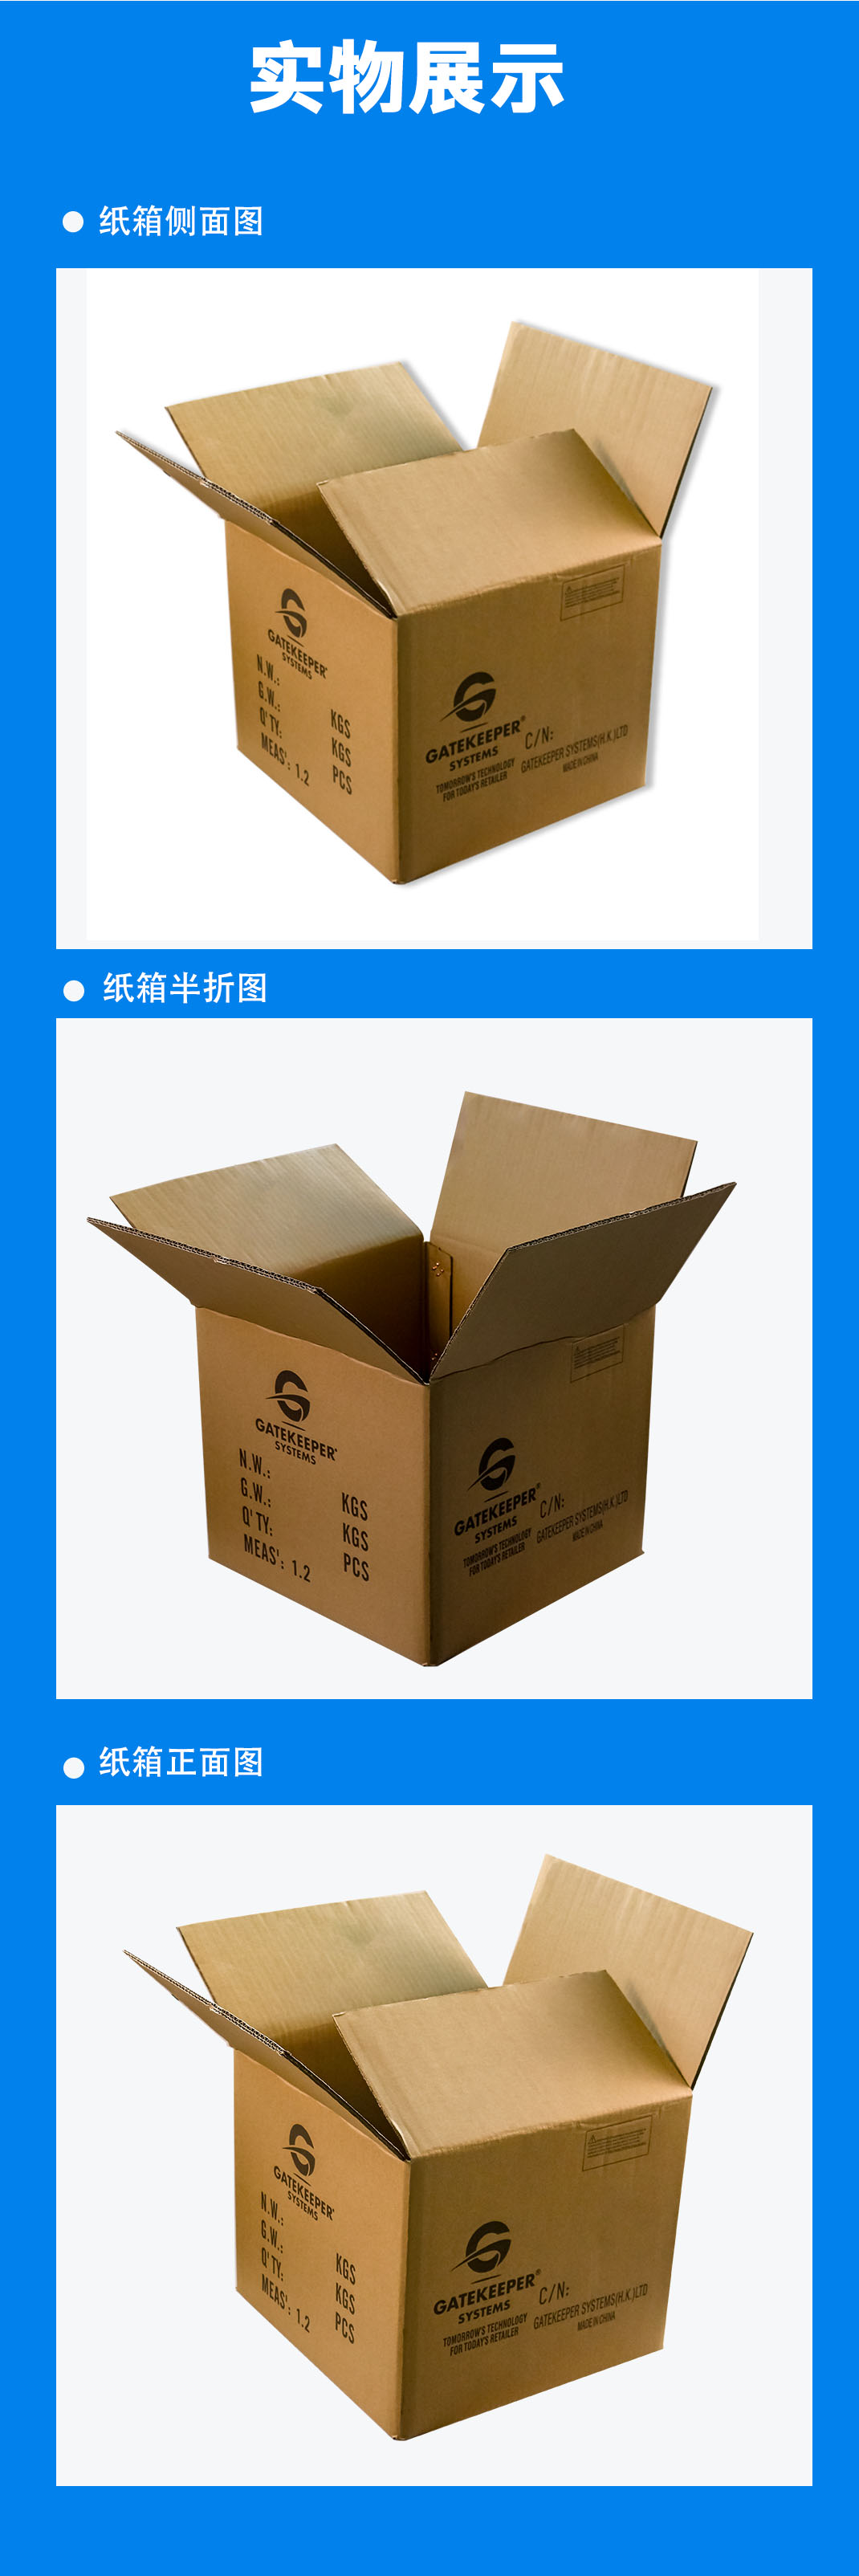 邵阳市纸箱常用的印刷分类